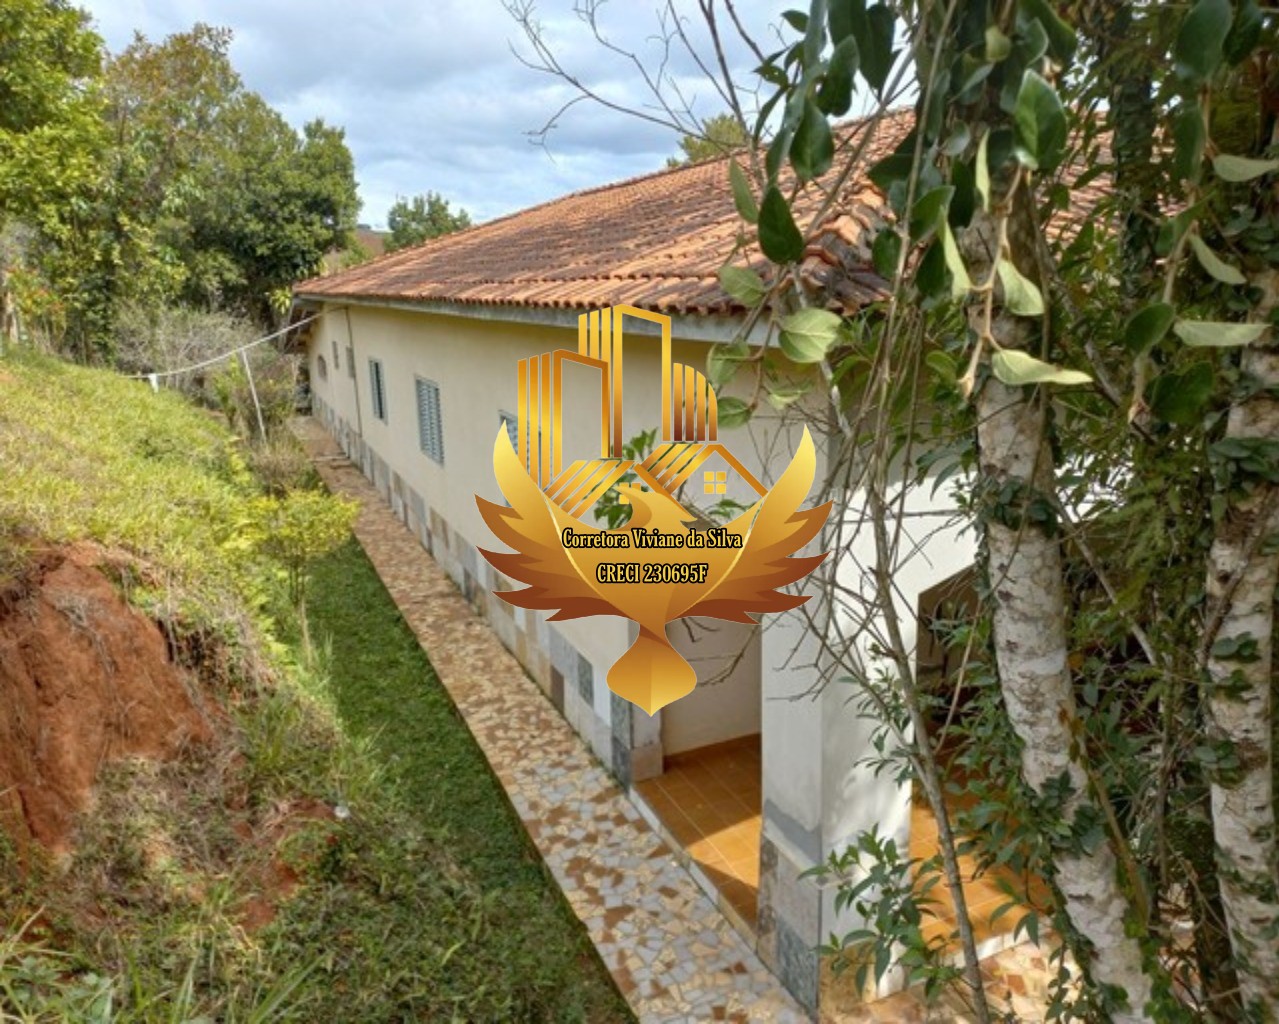 Sítio de 31 ha em São Luiz do Paraitinga, SP